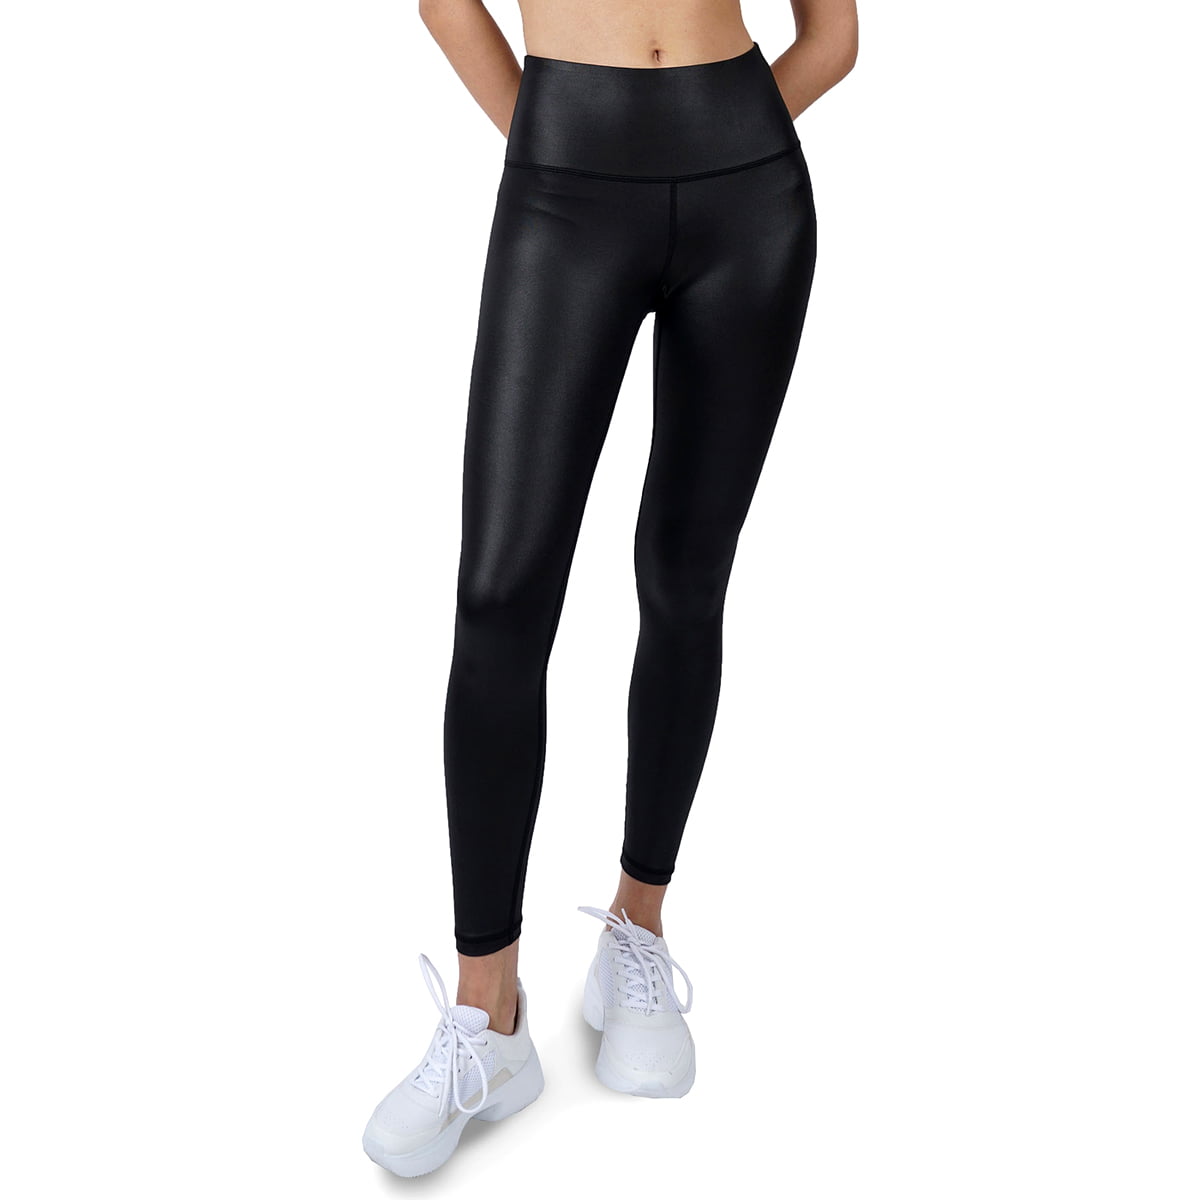 Lære replika amplitude Cover Girl Black Shiny Leather Look Yoga Workout Leggings, Large -  Walmart.com